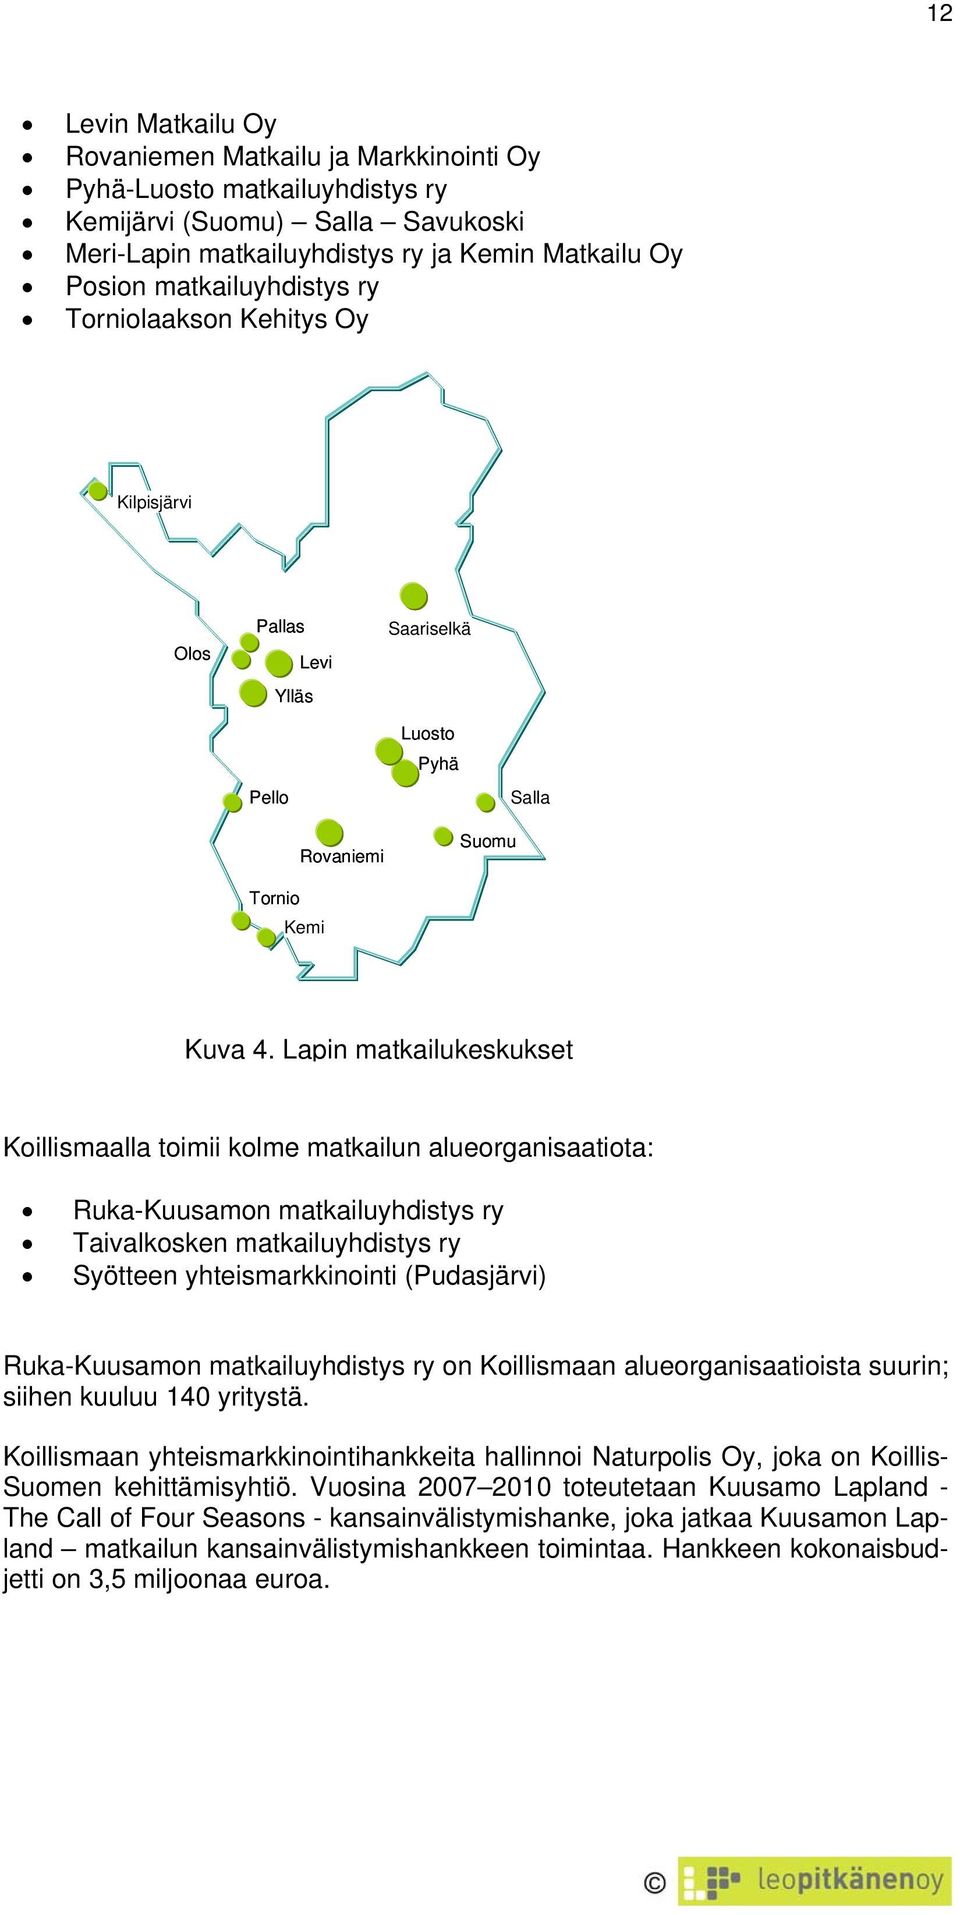 Lapin matkailukeskukset Koillismaalla toimii kolme matkailun alueorganisaatiota: Ruka-Kuusamon matkailuyhdistys ry Taivalkosken matkailuyhdistys ry Syötteen yhteismarkkinointi (Pudasjärvi)